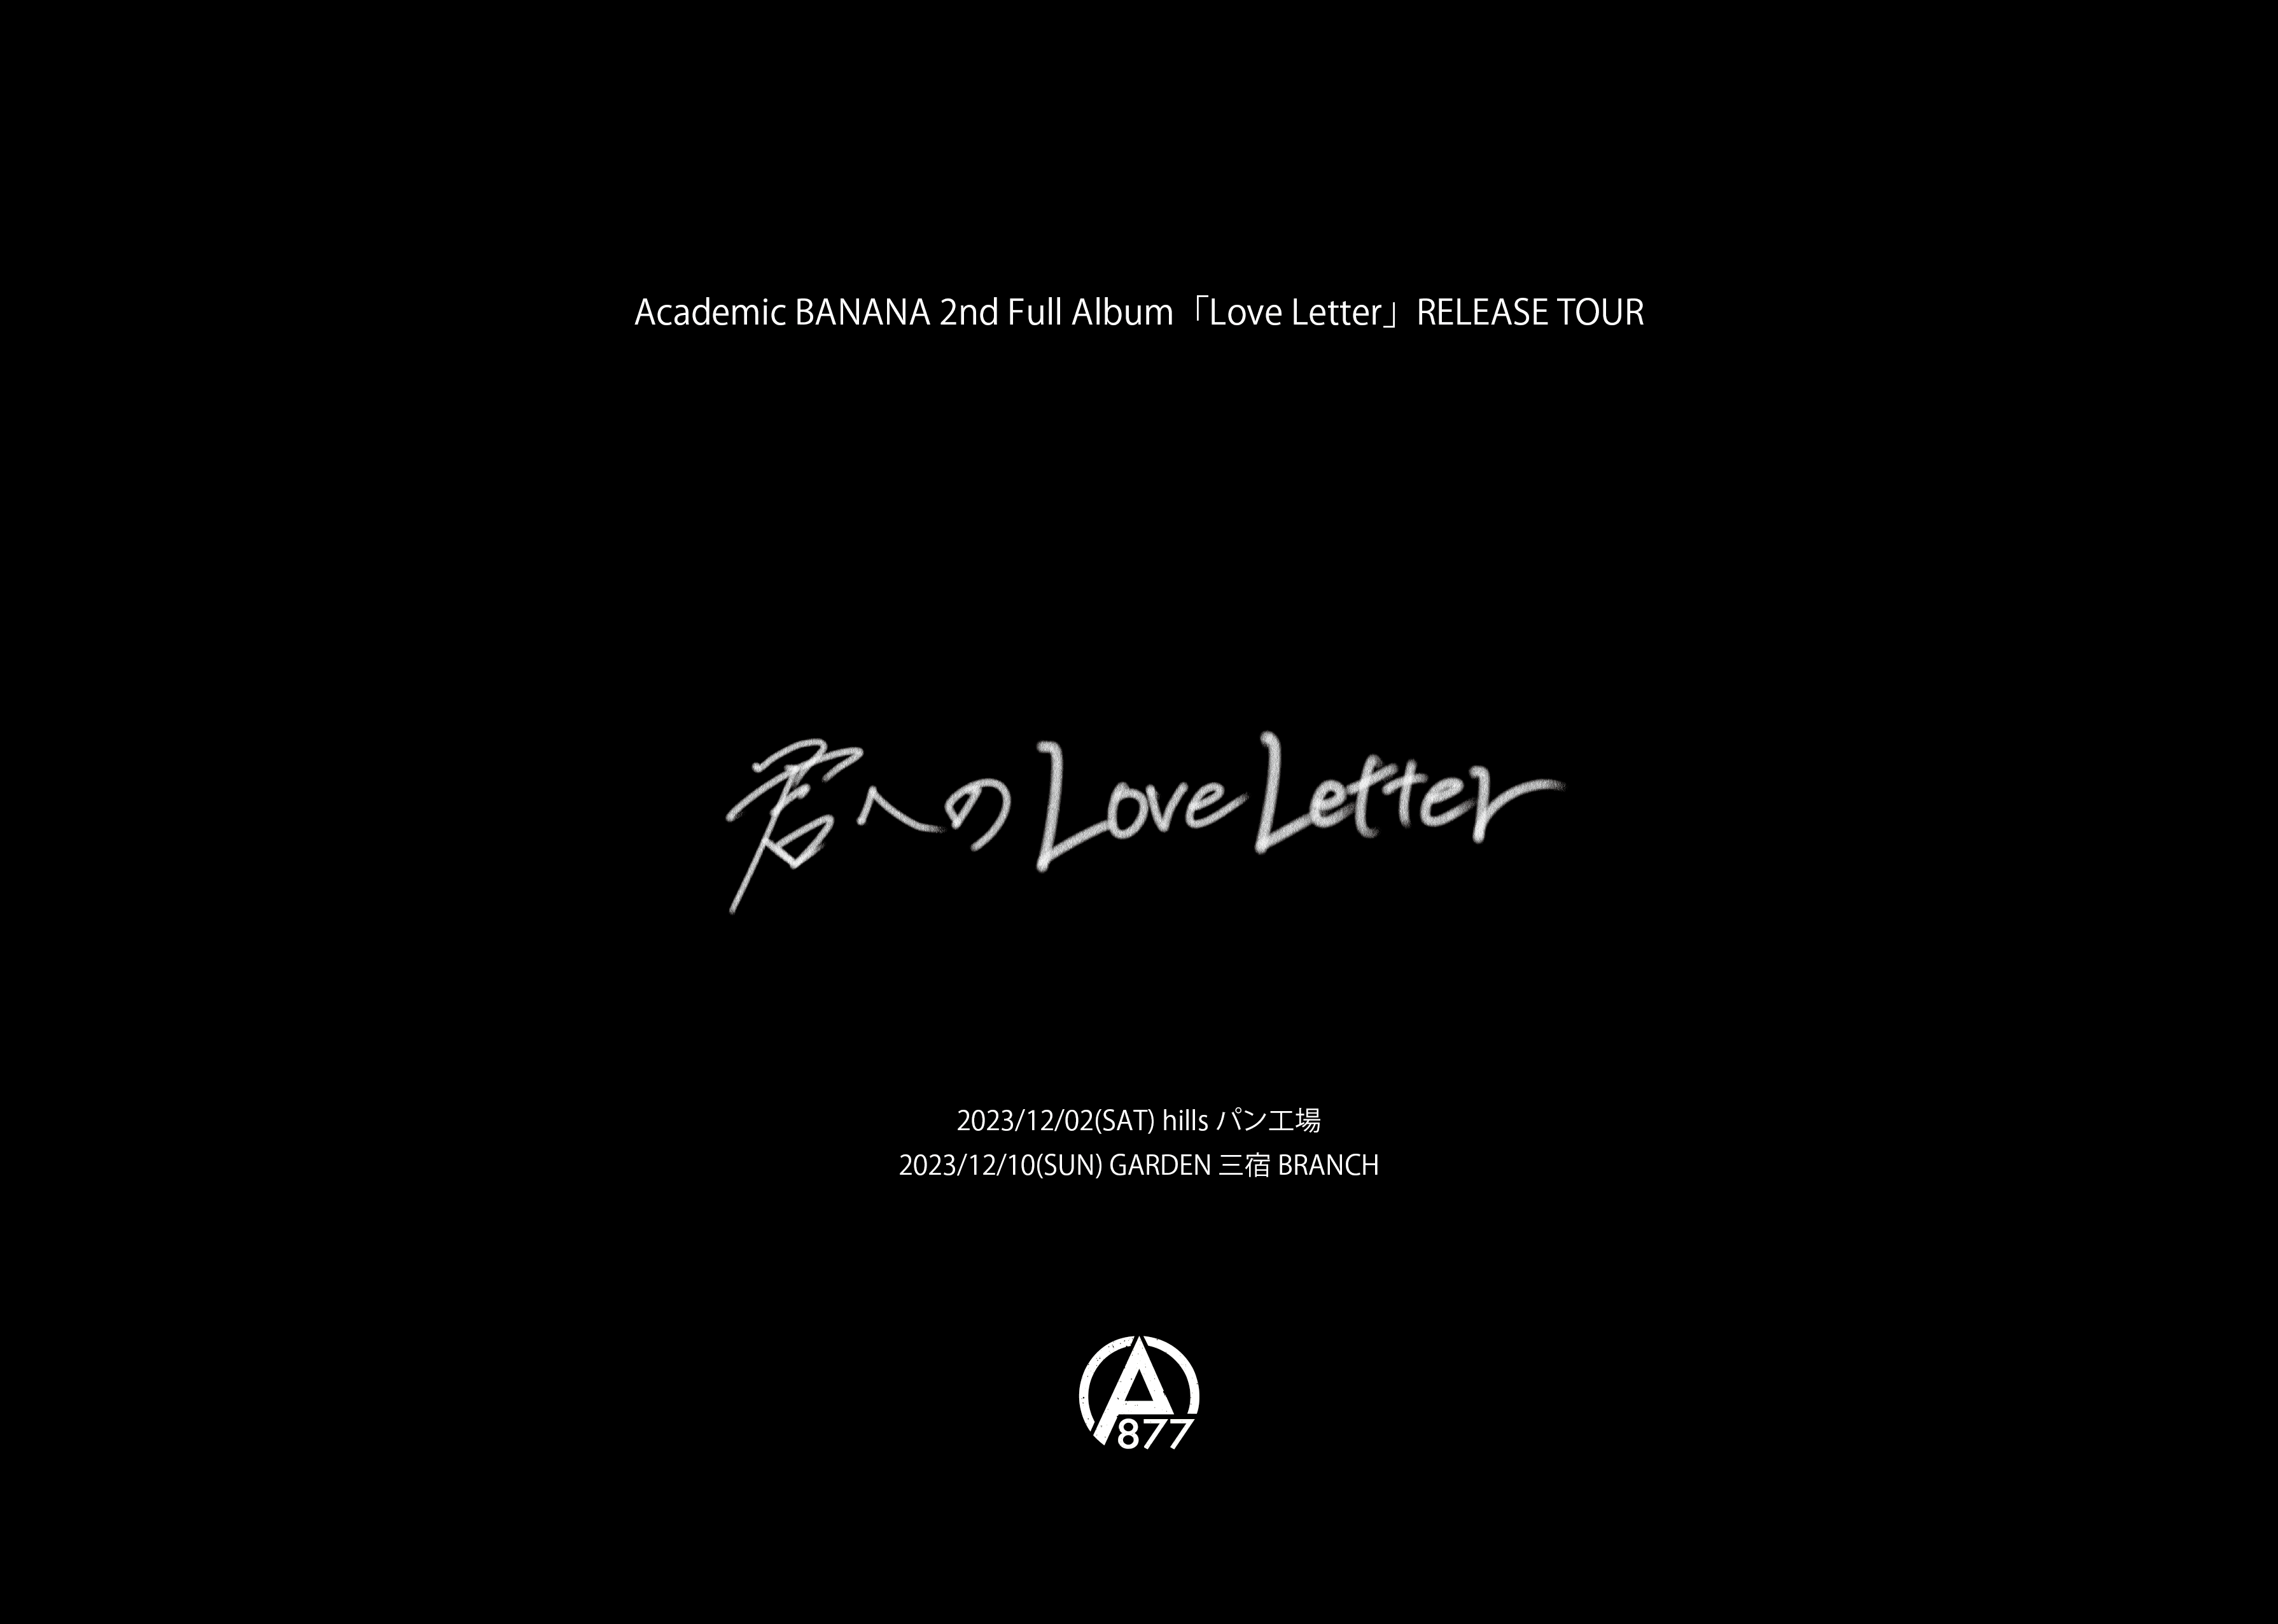 Academic BANANA 2nd Full Album「Love Letter」RELEASE TOUR 「君へのLove Letter」東京公演